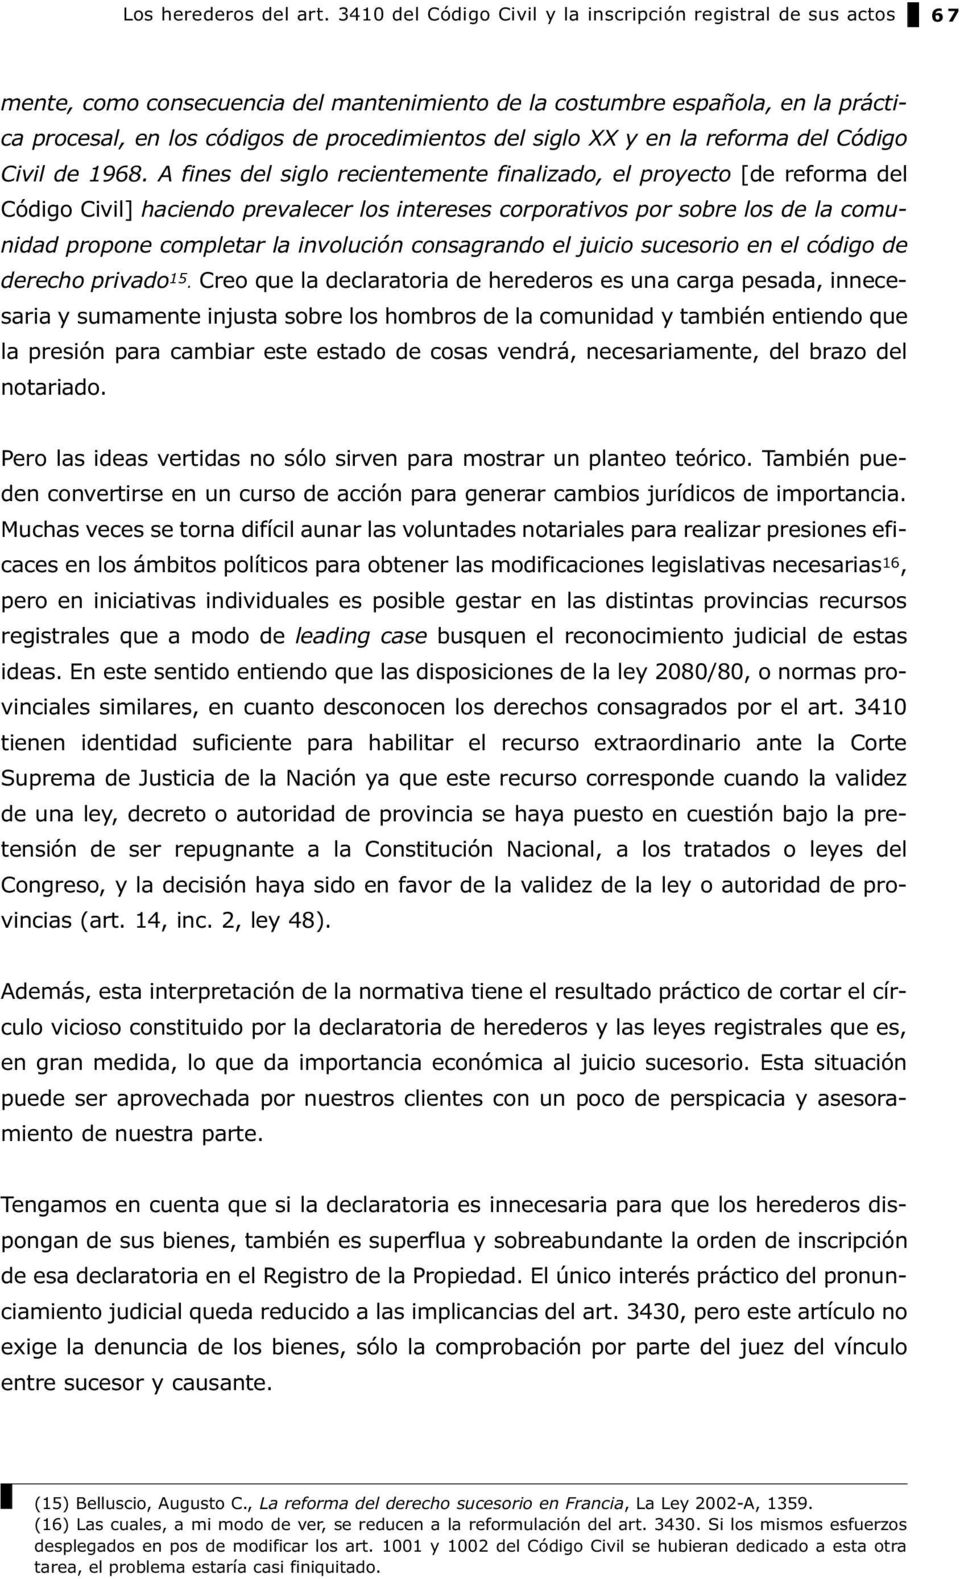 siglo XX y en la reforma del Código Civil de 1968.